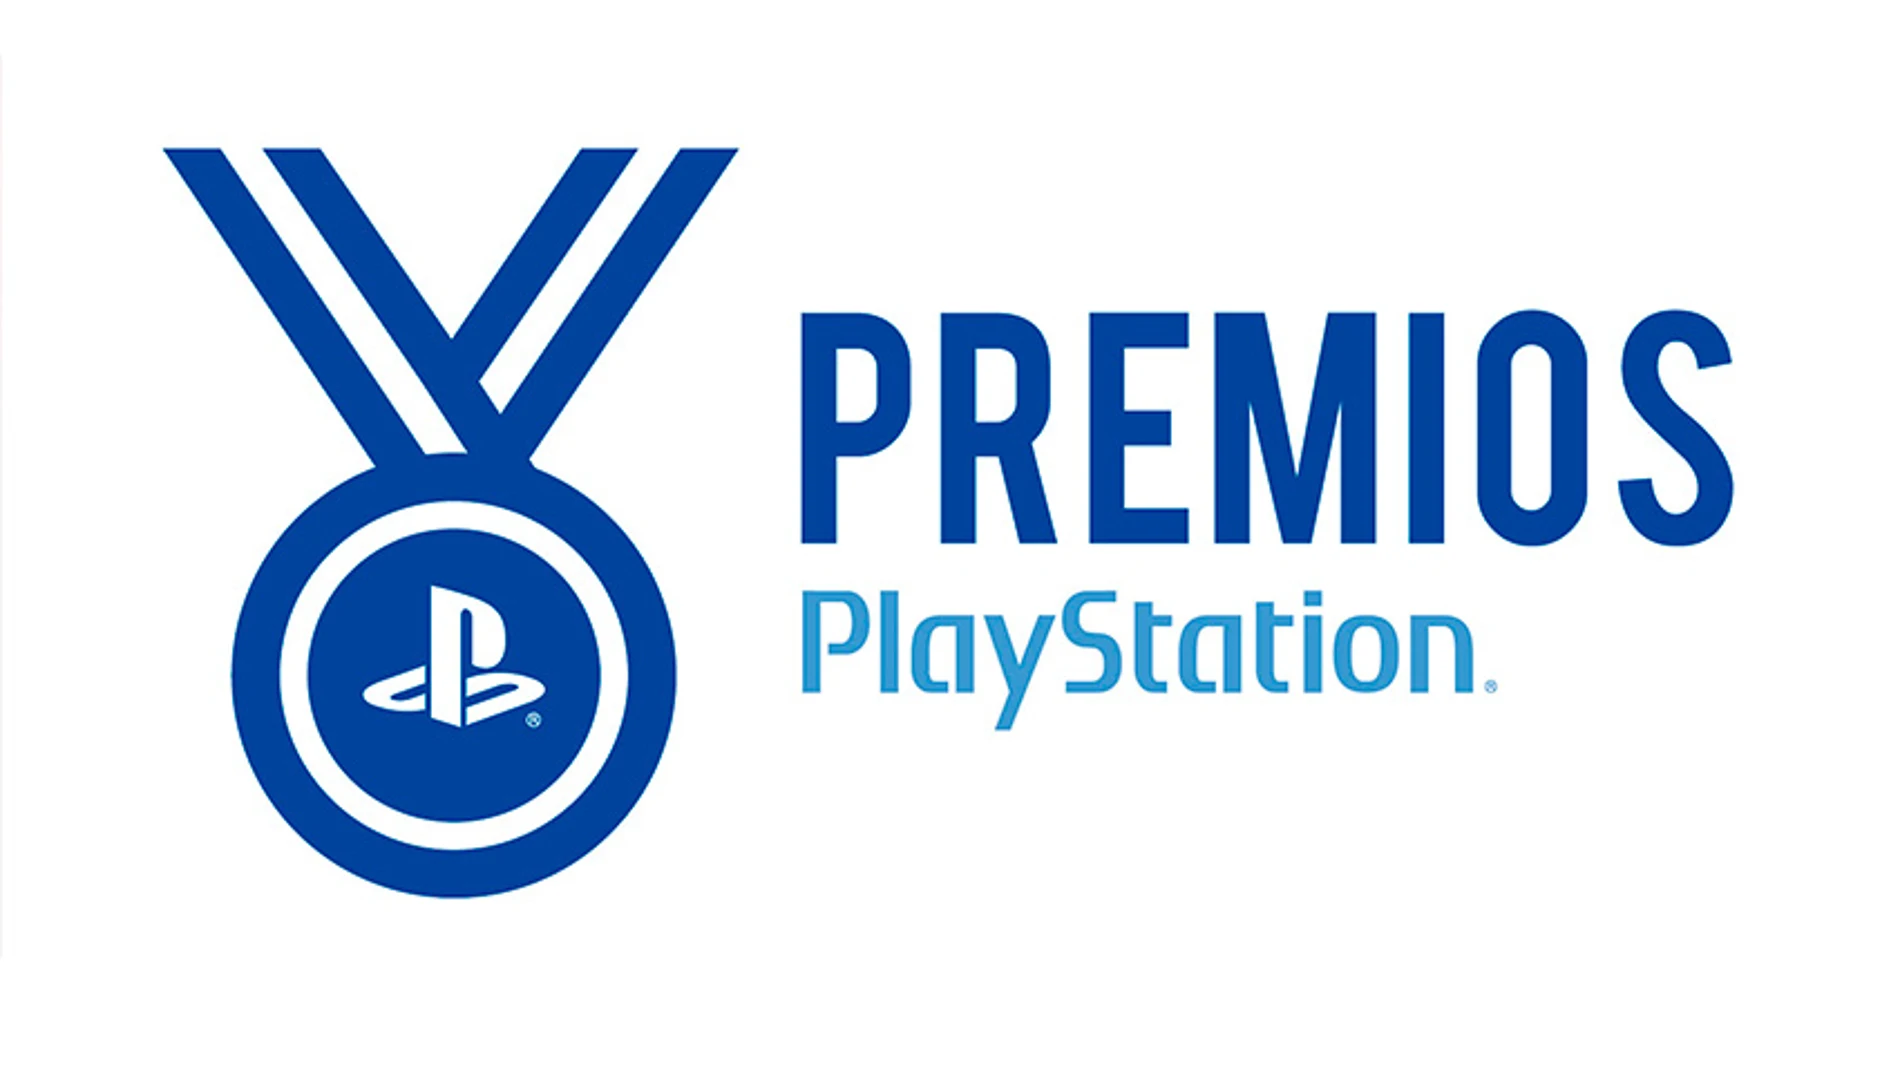 Arranca la II Edición de los Premios PlayStation